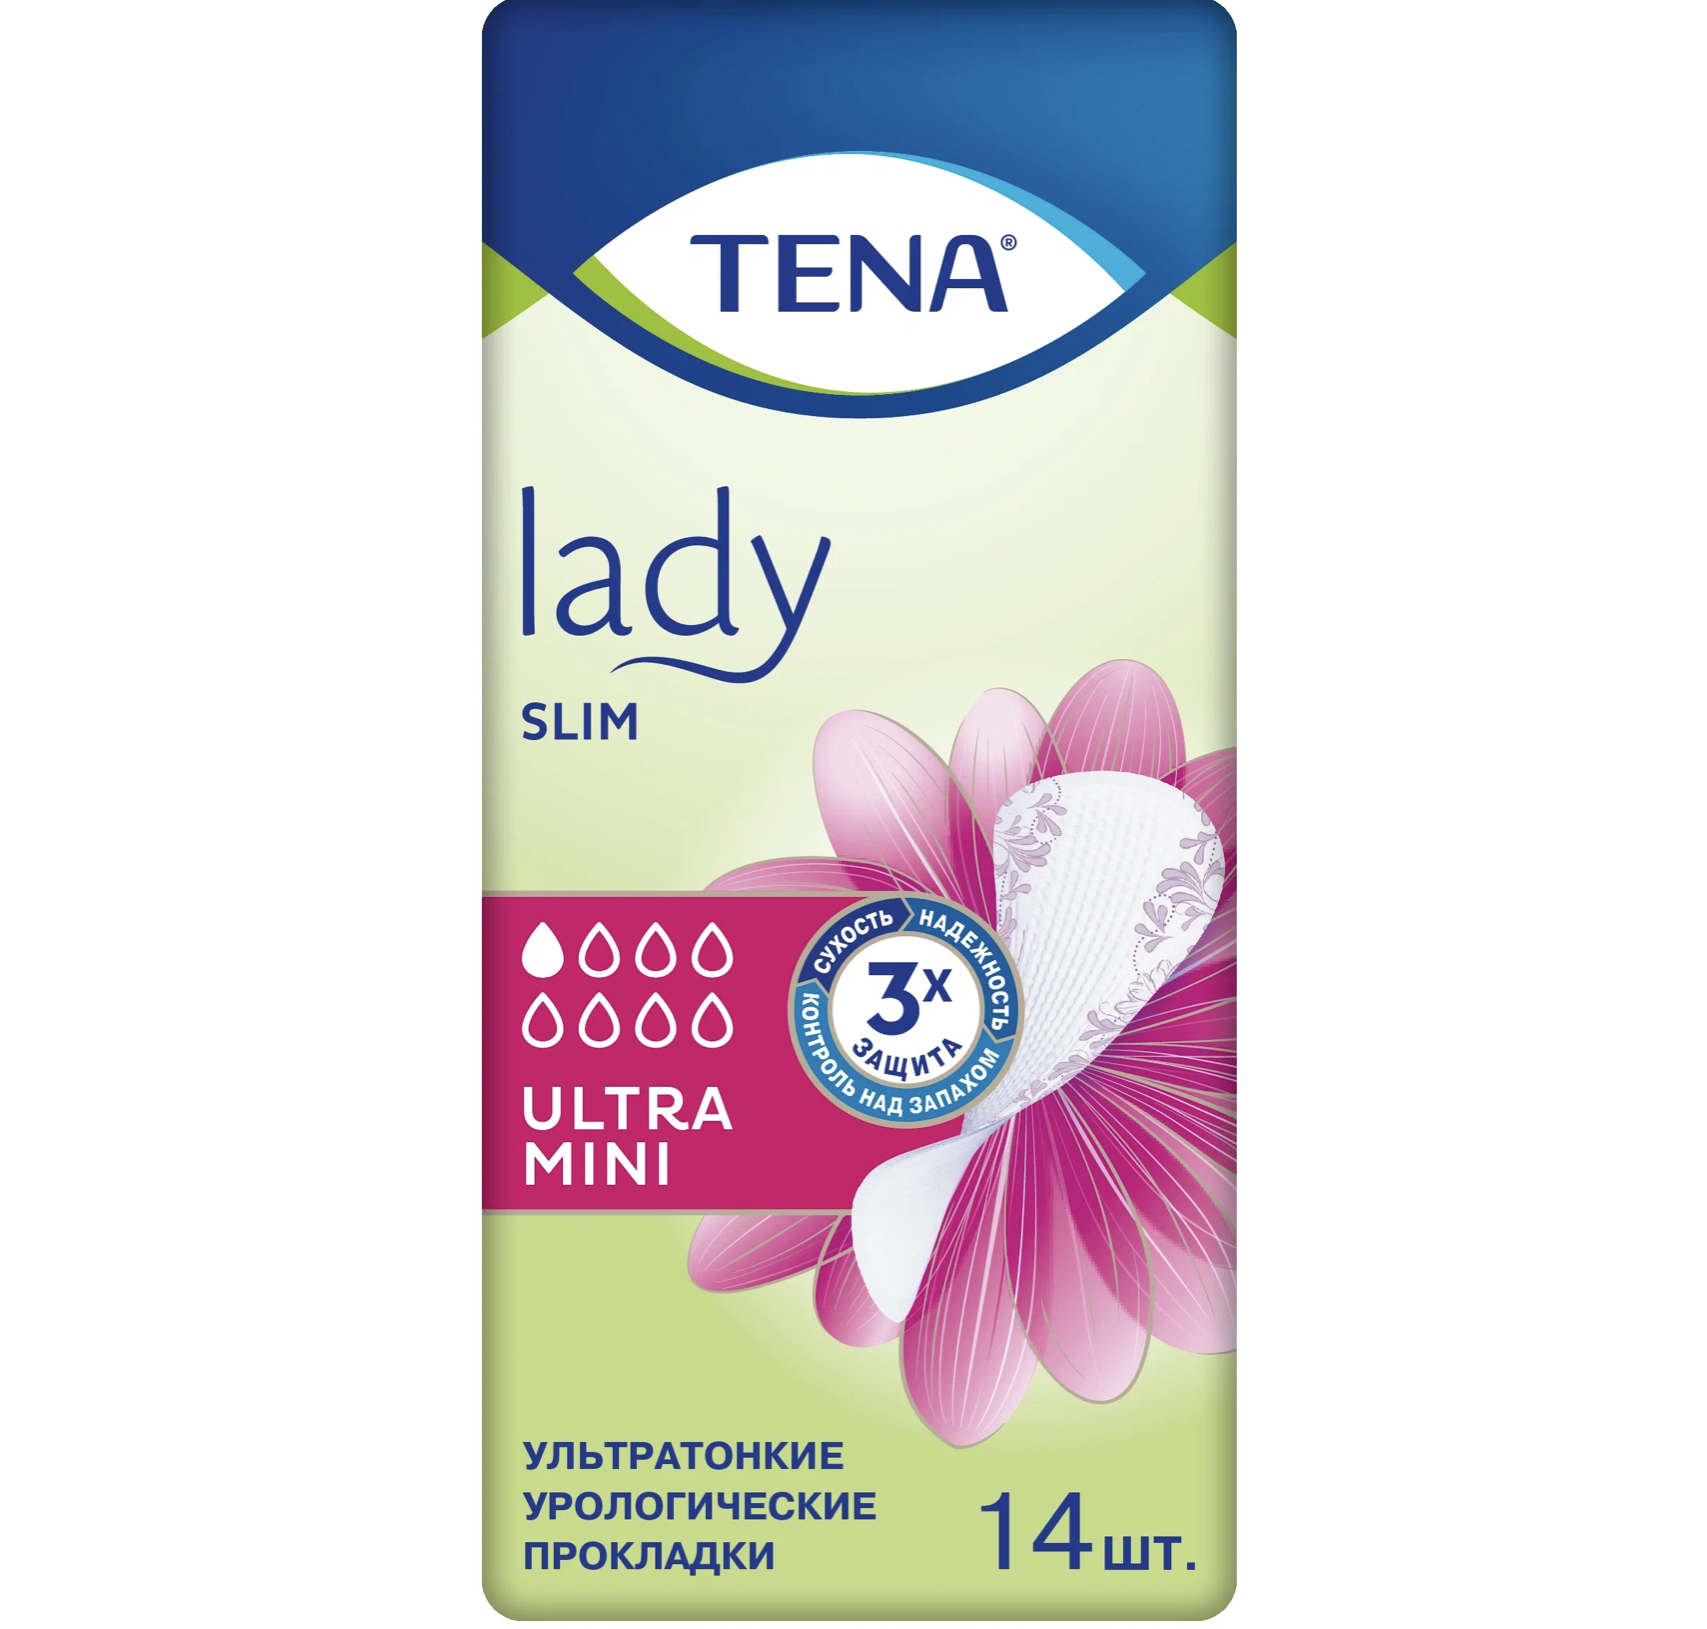     / Tena Lady Slim -   Ultra Mini 14 